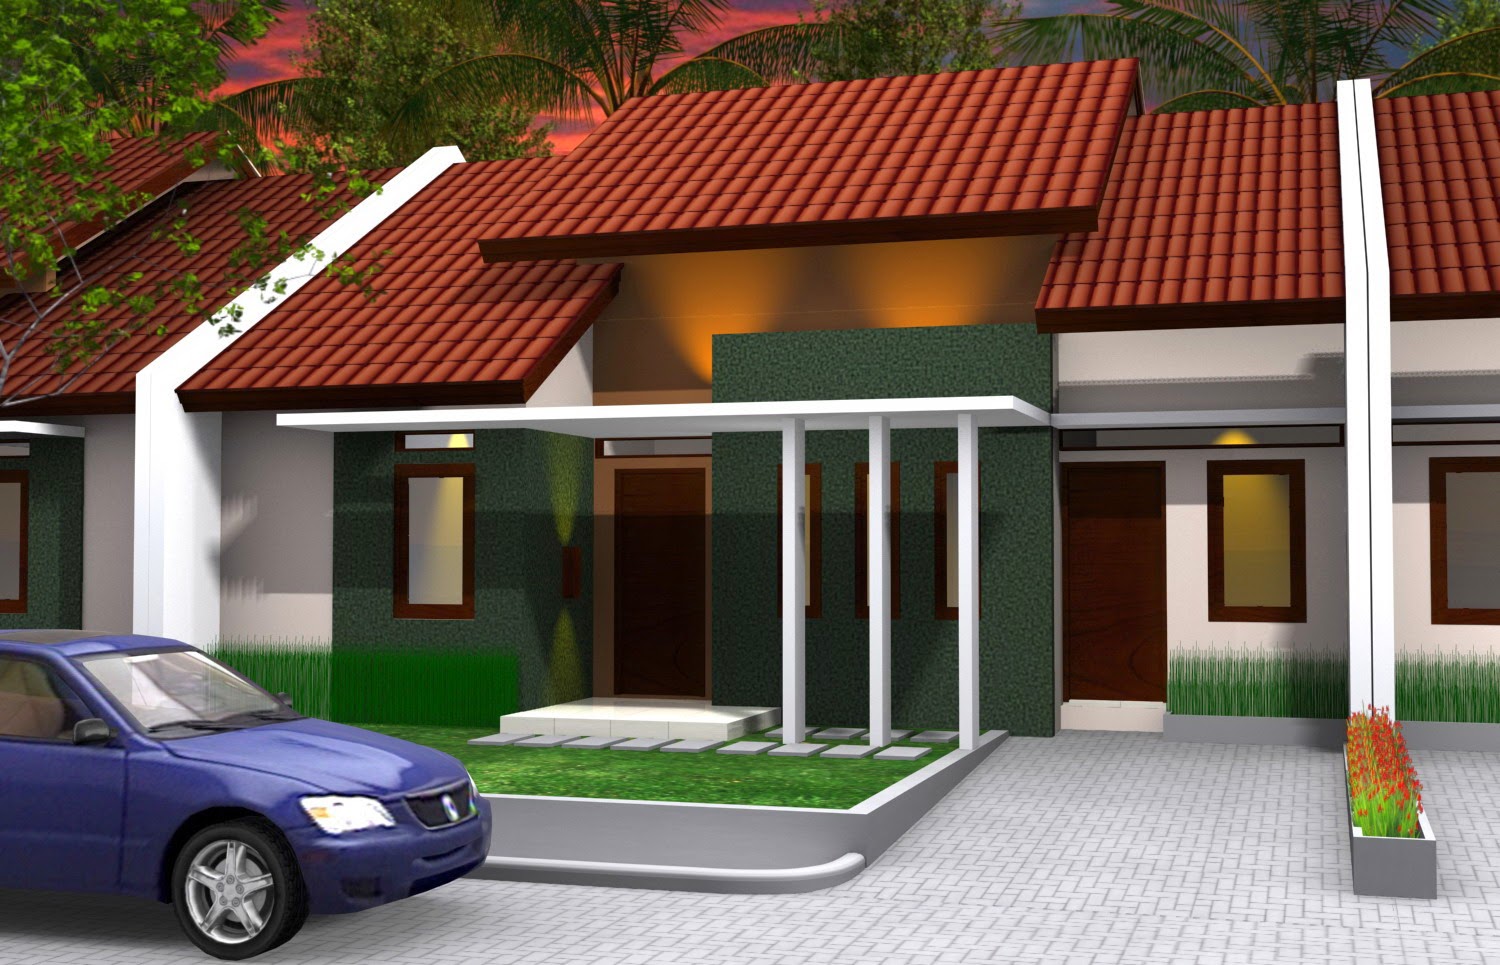 Desain Rumah Minimalis Type 70 1 lantai Terbaru 2015 